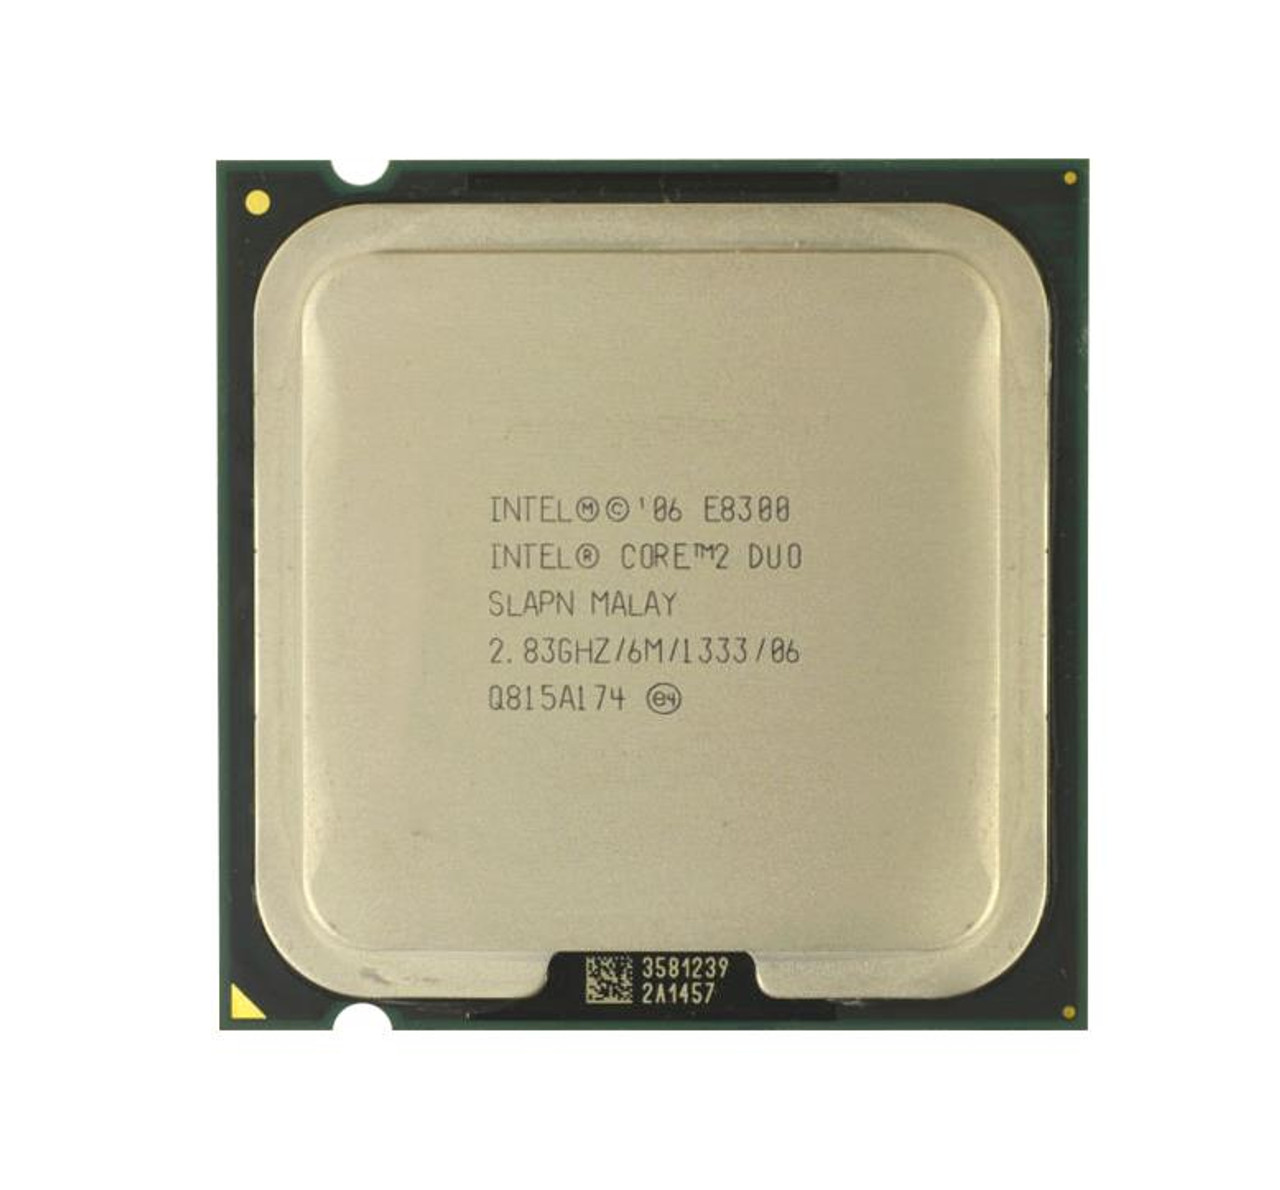 Dell 2.83GHz 1333MHz FSB 6MB L2 Cache Intel Core 2 Duo E8300 Processor Upgrade